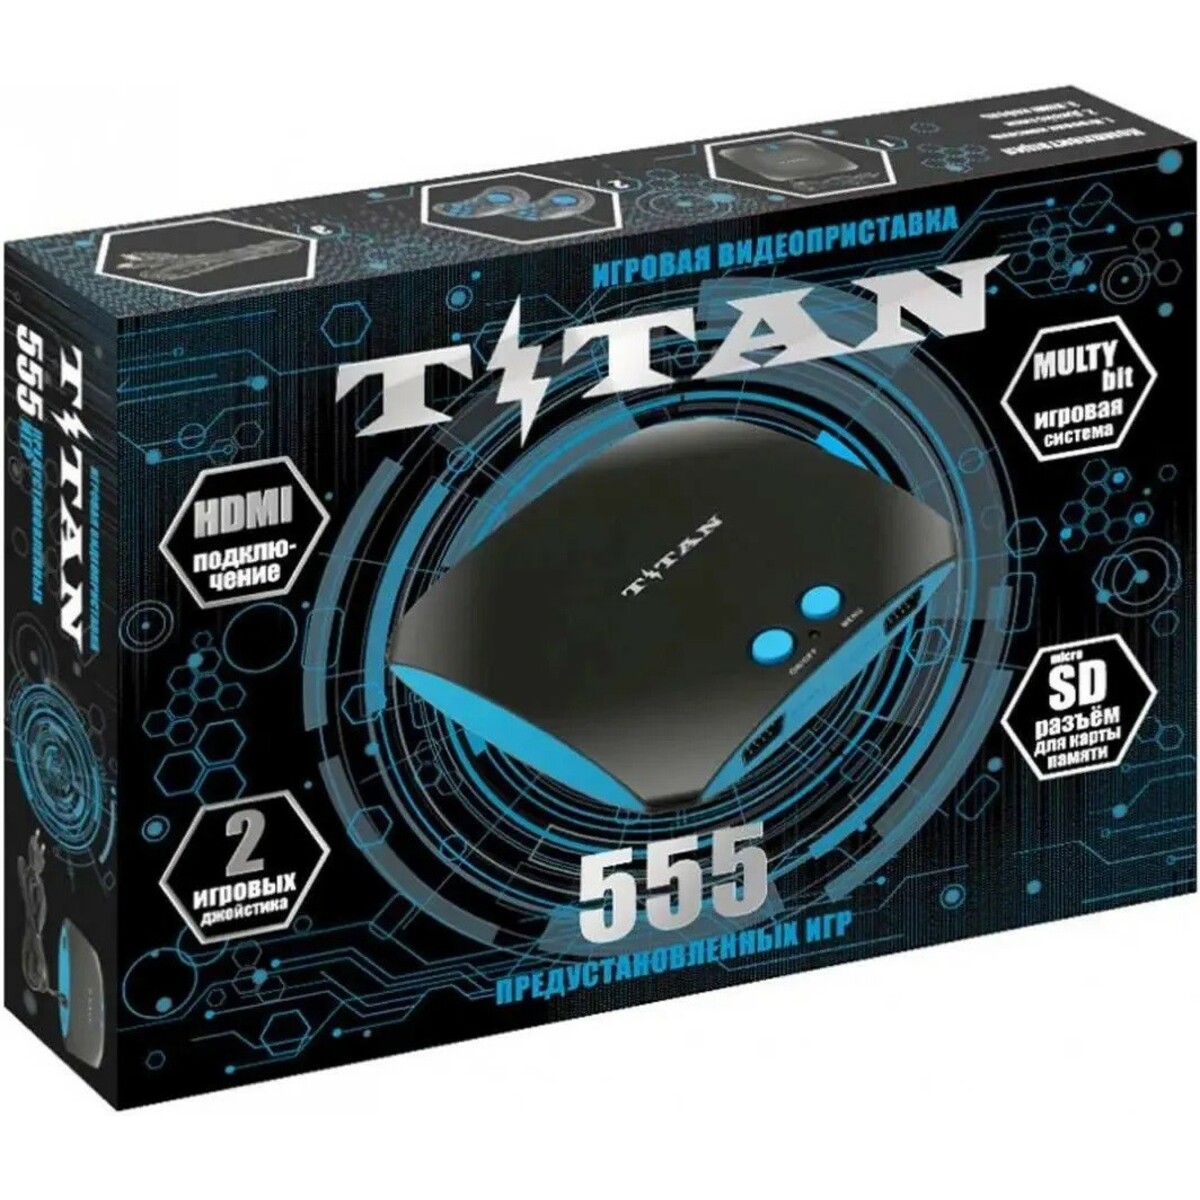 Игровая приставка Titan Magistr Titan 3, черный 